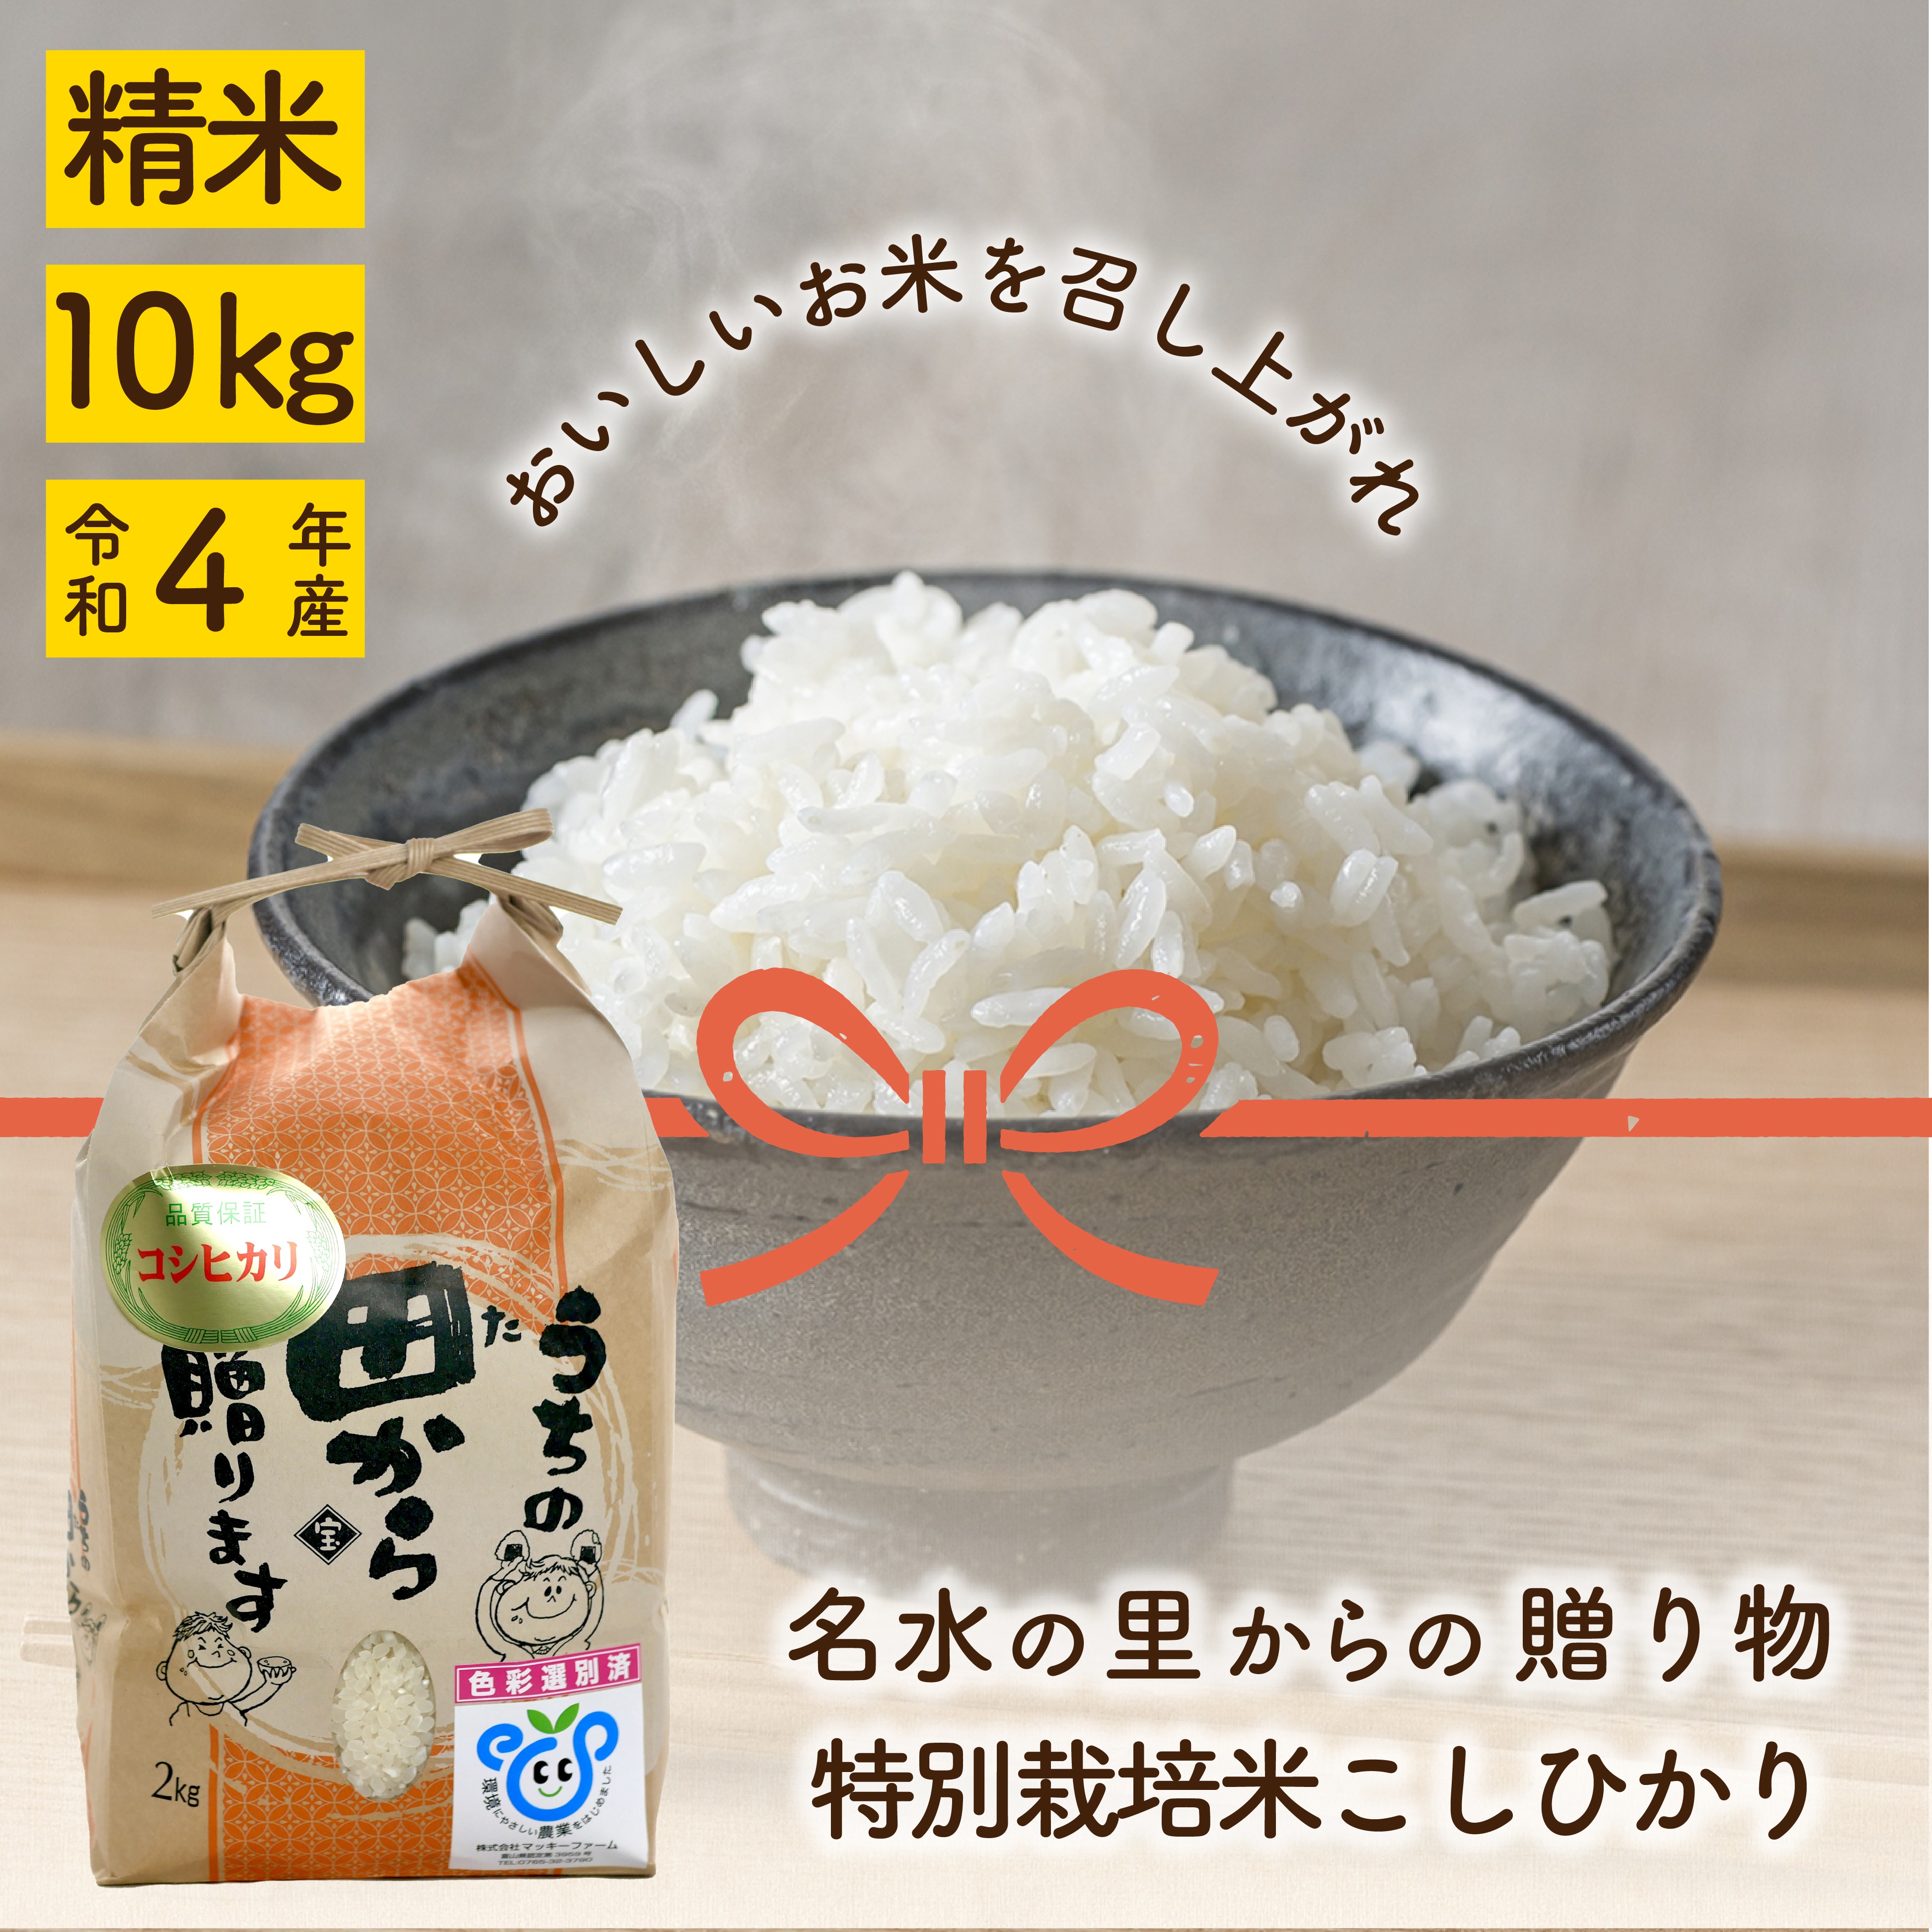 新米栃木県新米ミルキークイーン無農薬にて作り上げた自慢のお米になり